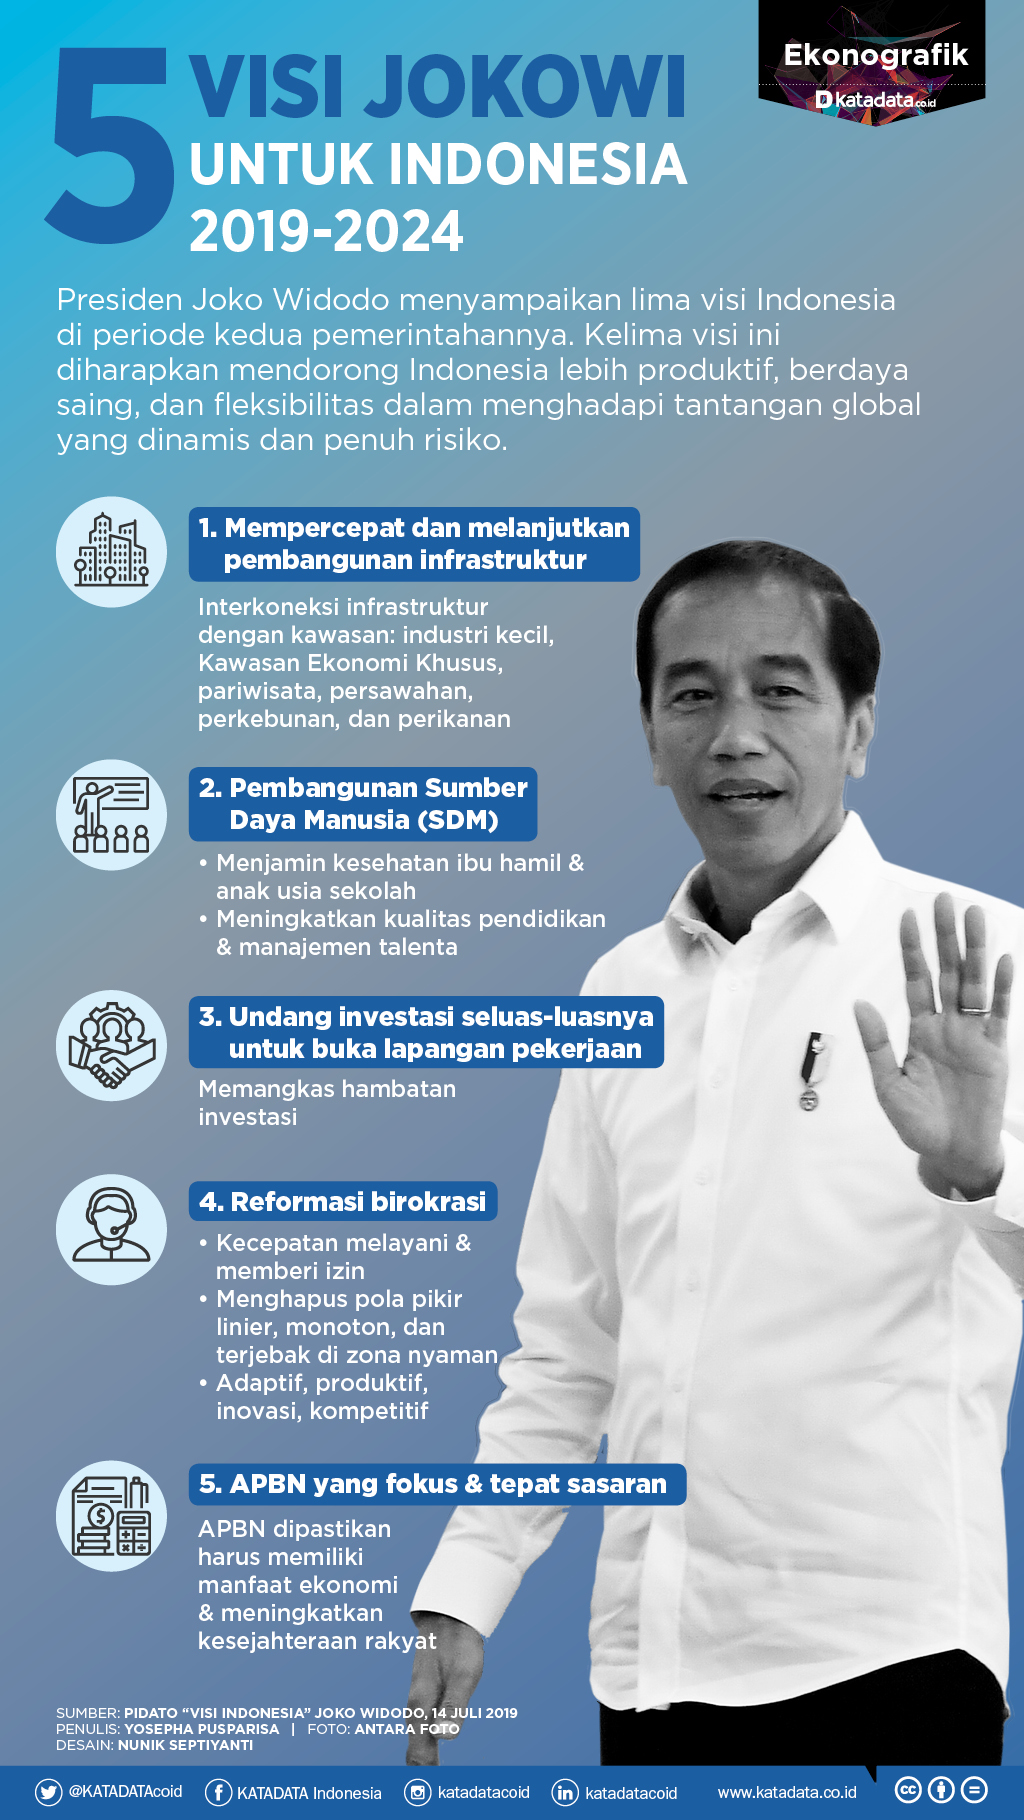 5 Visi Jokowi untuk Indonesia 2019-2024